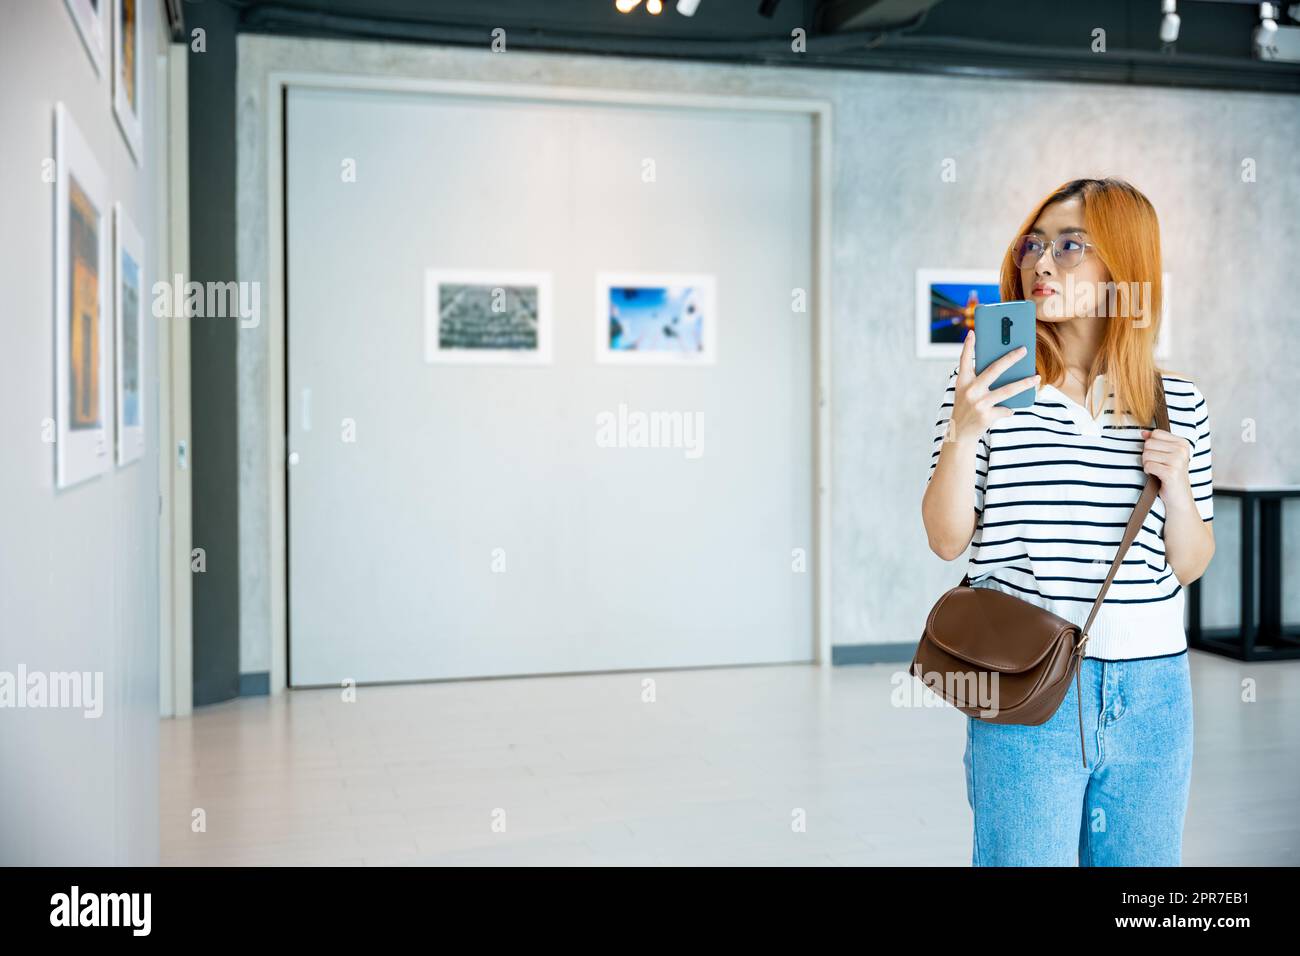 La donna visitatrice in piedi scatta foto della galleria d'arte davanti a quadri incorniciati Foto Stock